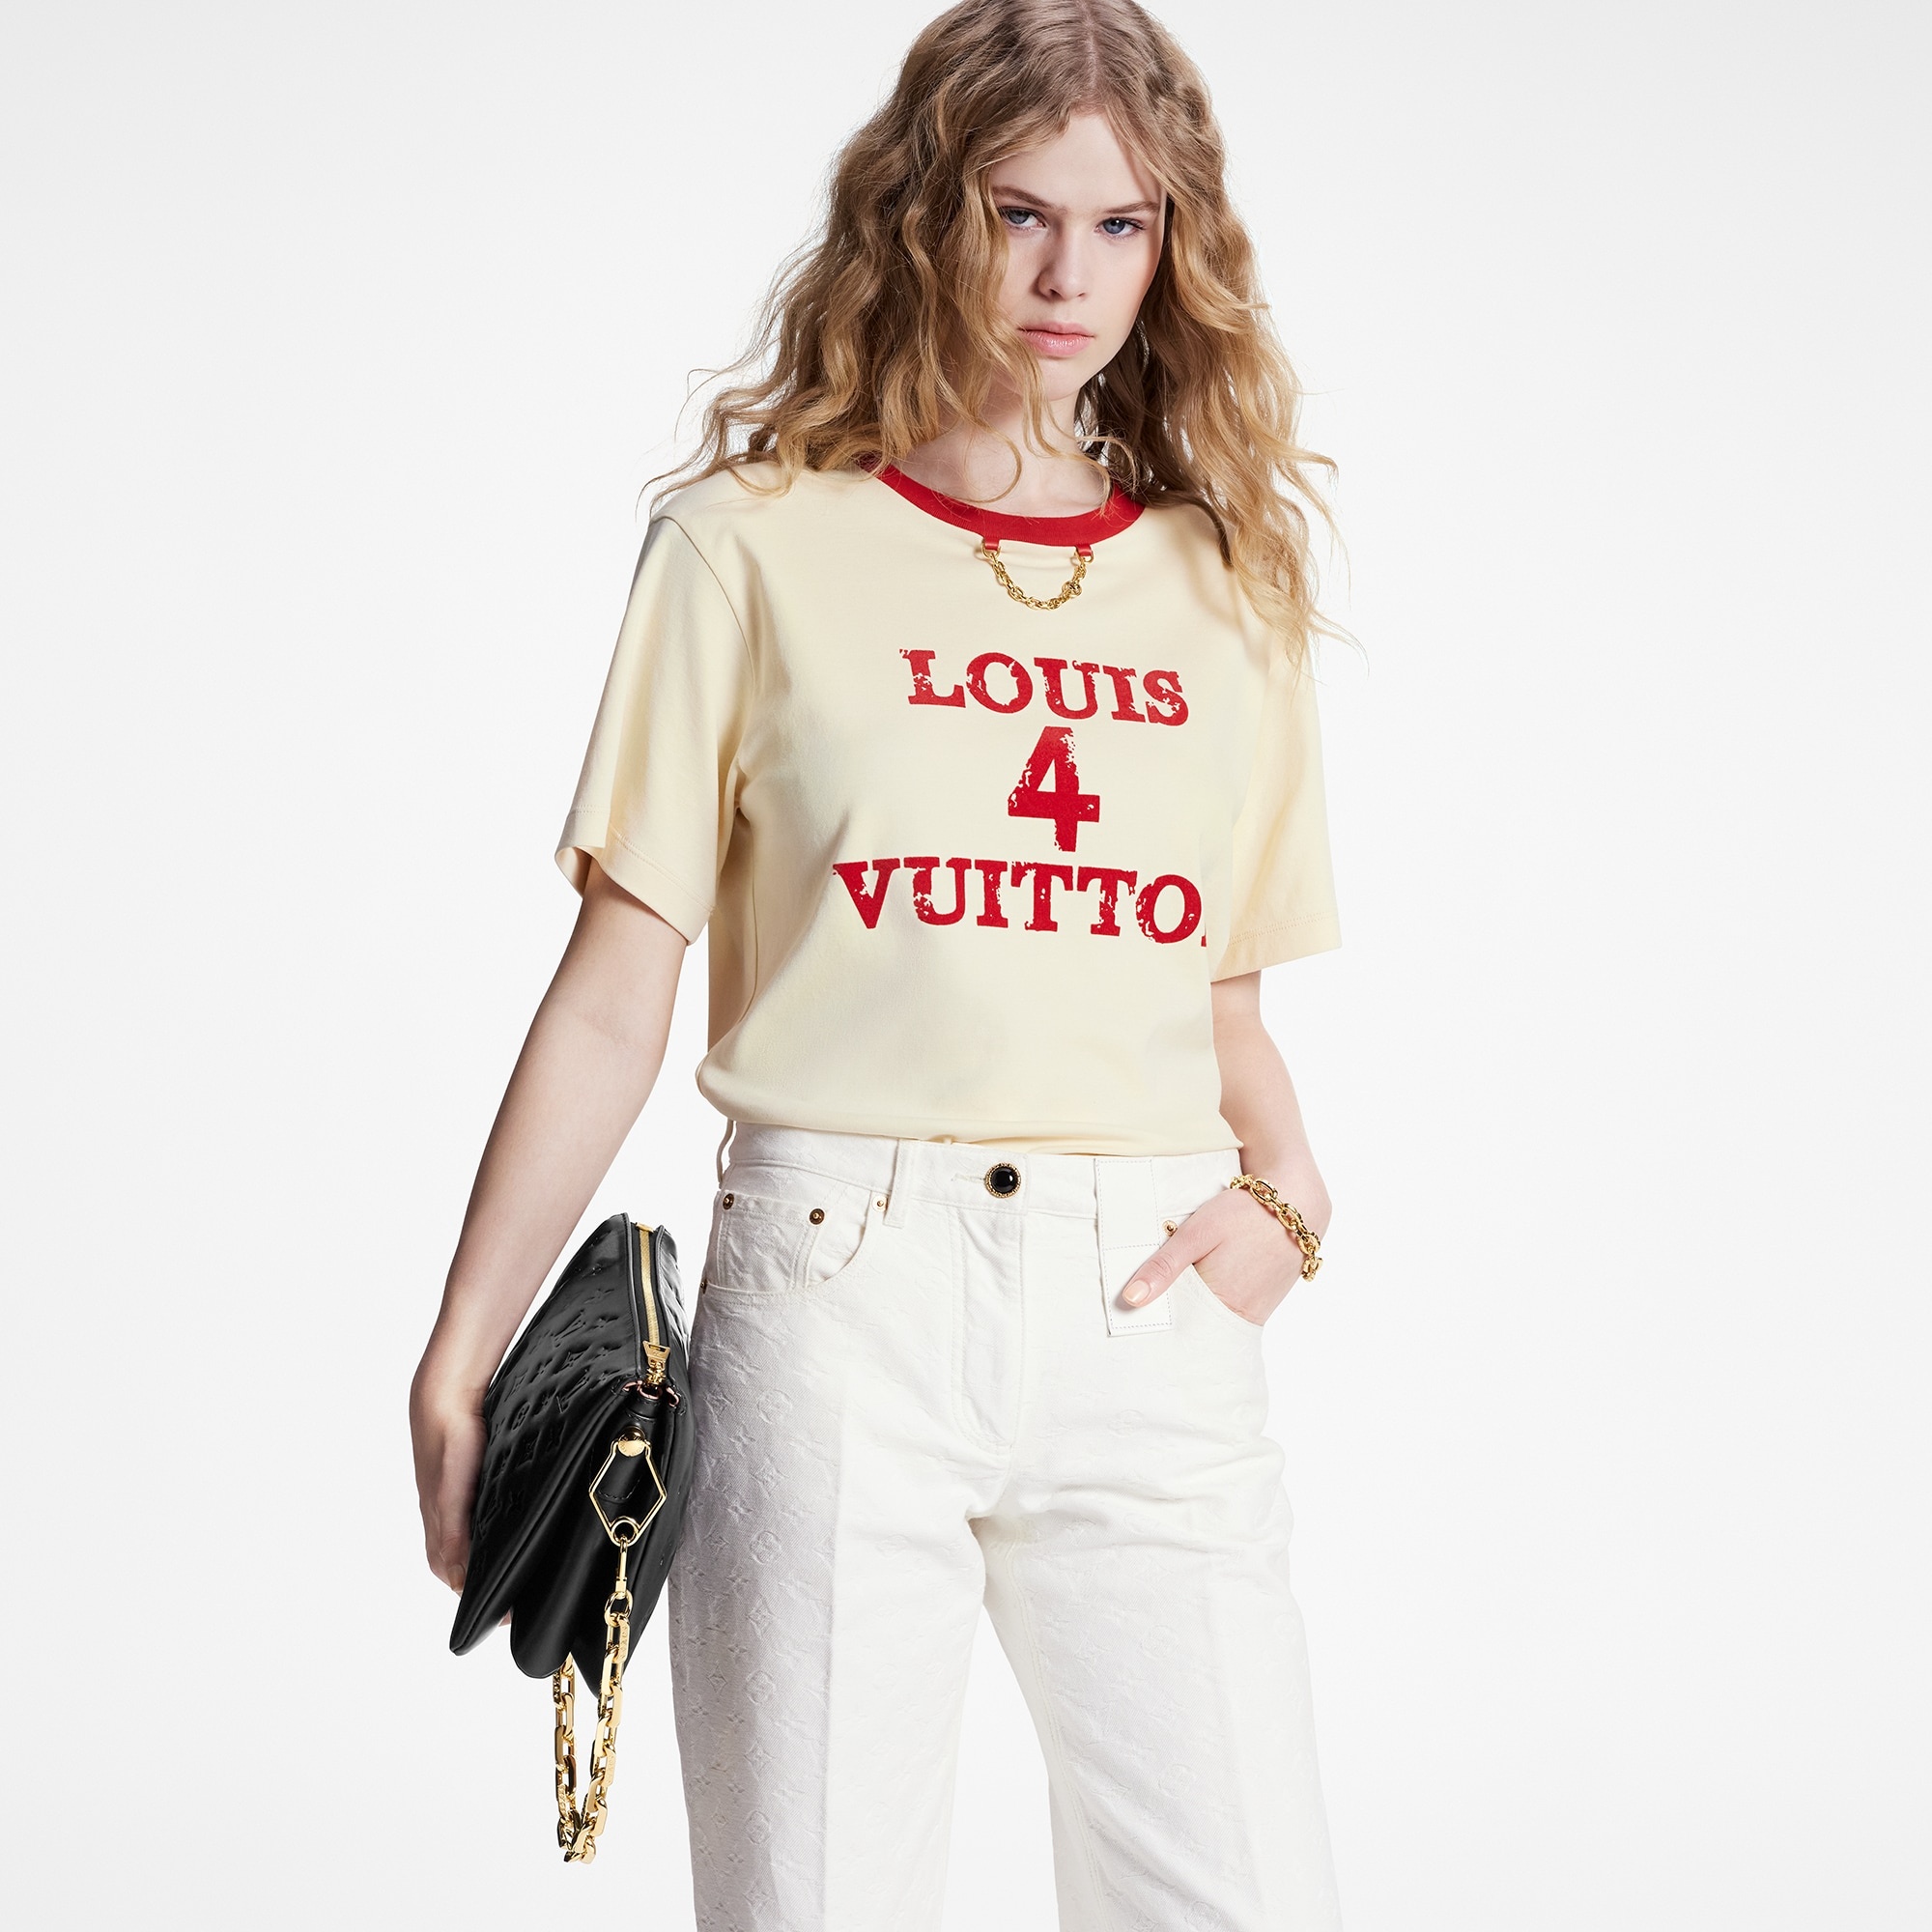 Louis 4 Vuitton T-Shirt - 5